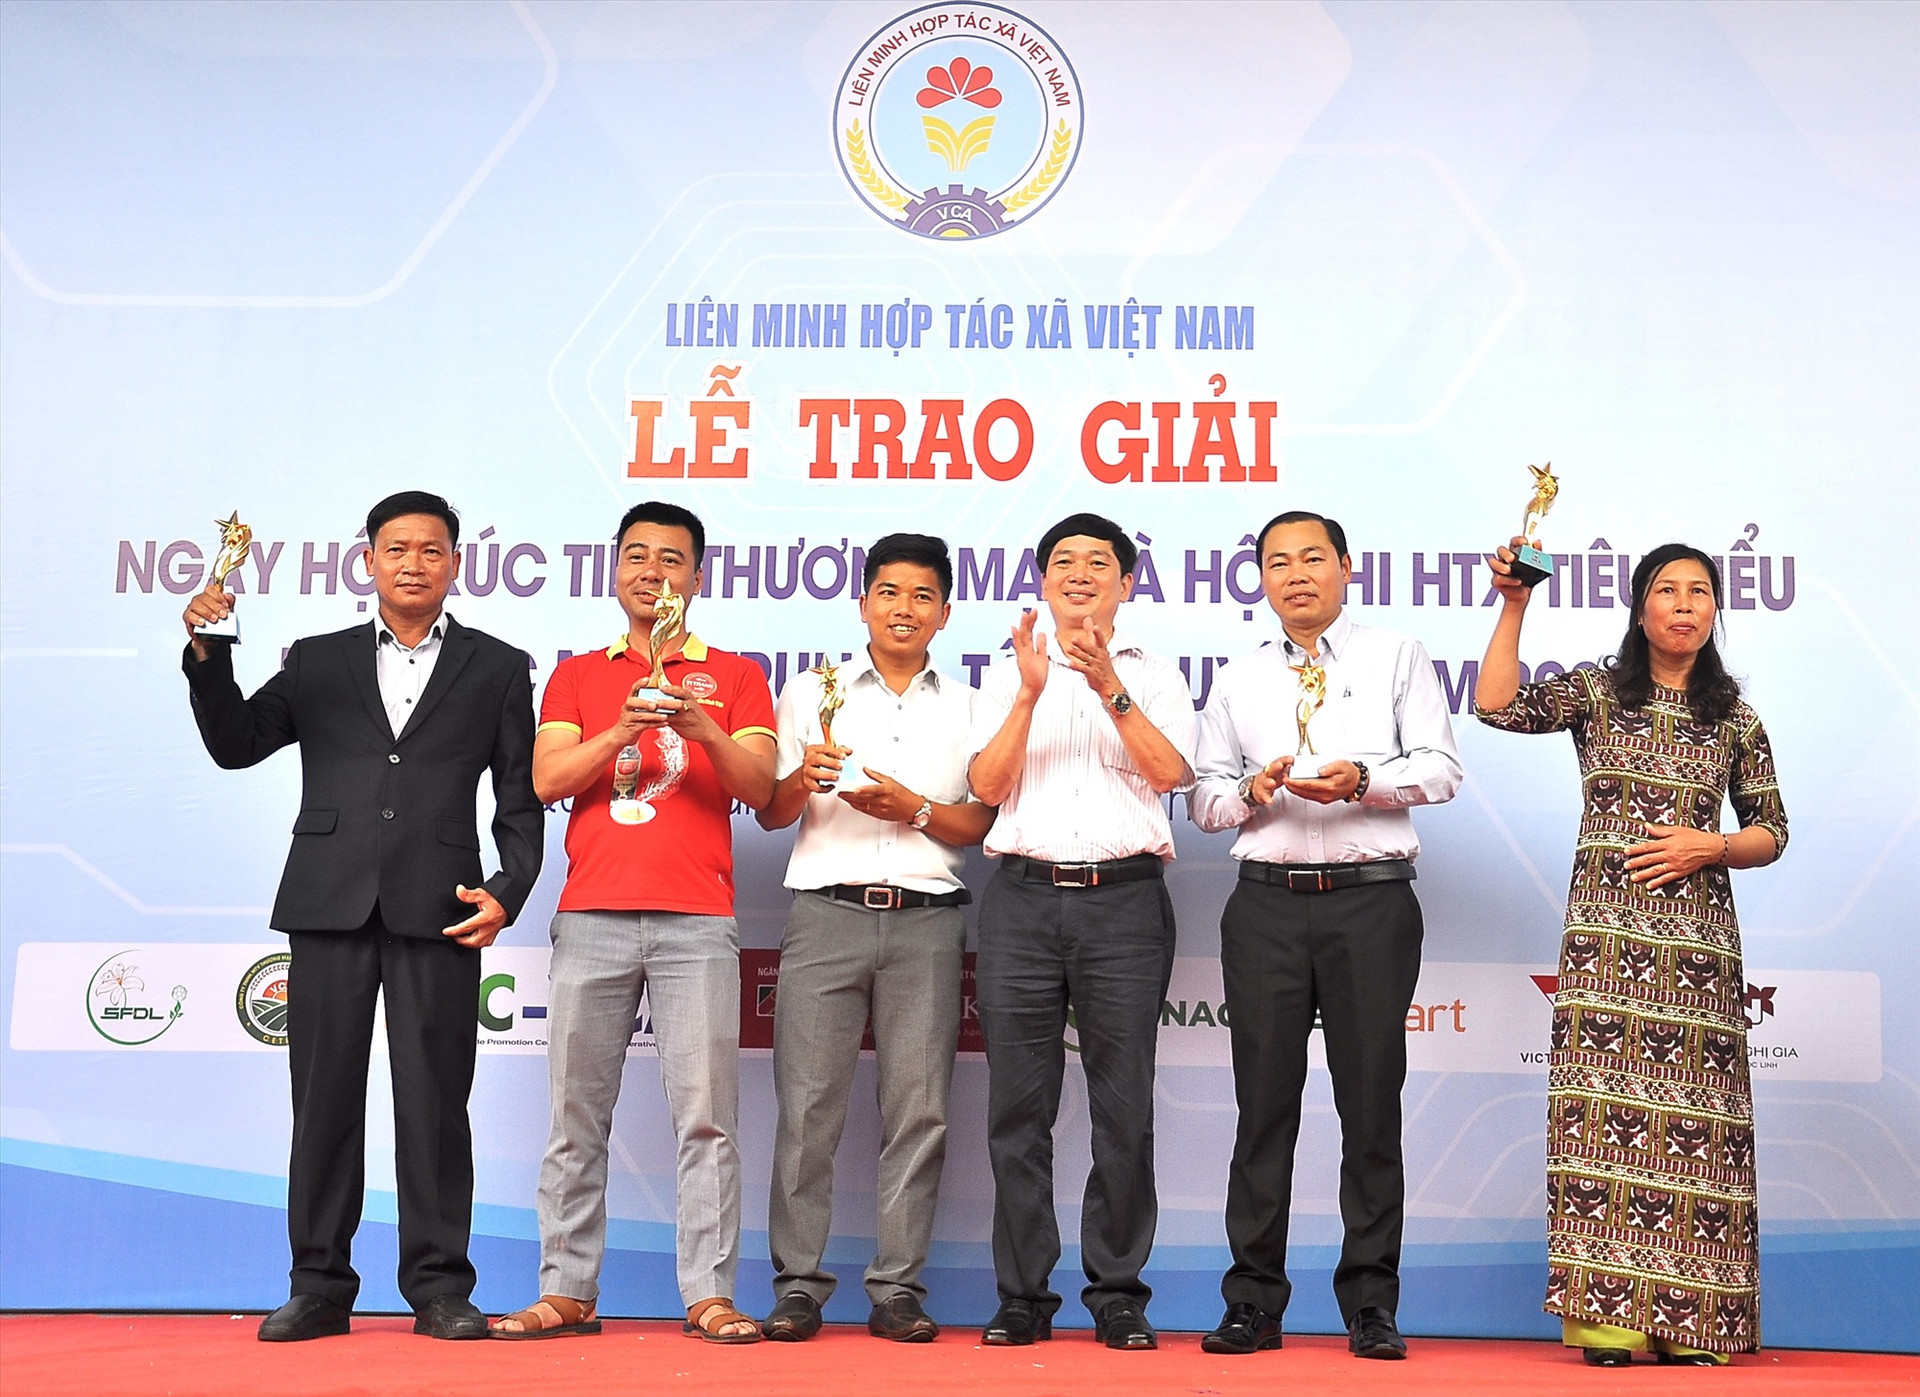 Ông Lê Văn Nghị - Chủ tịch Liên minh HTX Việt Nam trao cúp cho đại diện 5 HTX đạt giải A tại hội thi. Ảnh: VINH ANH